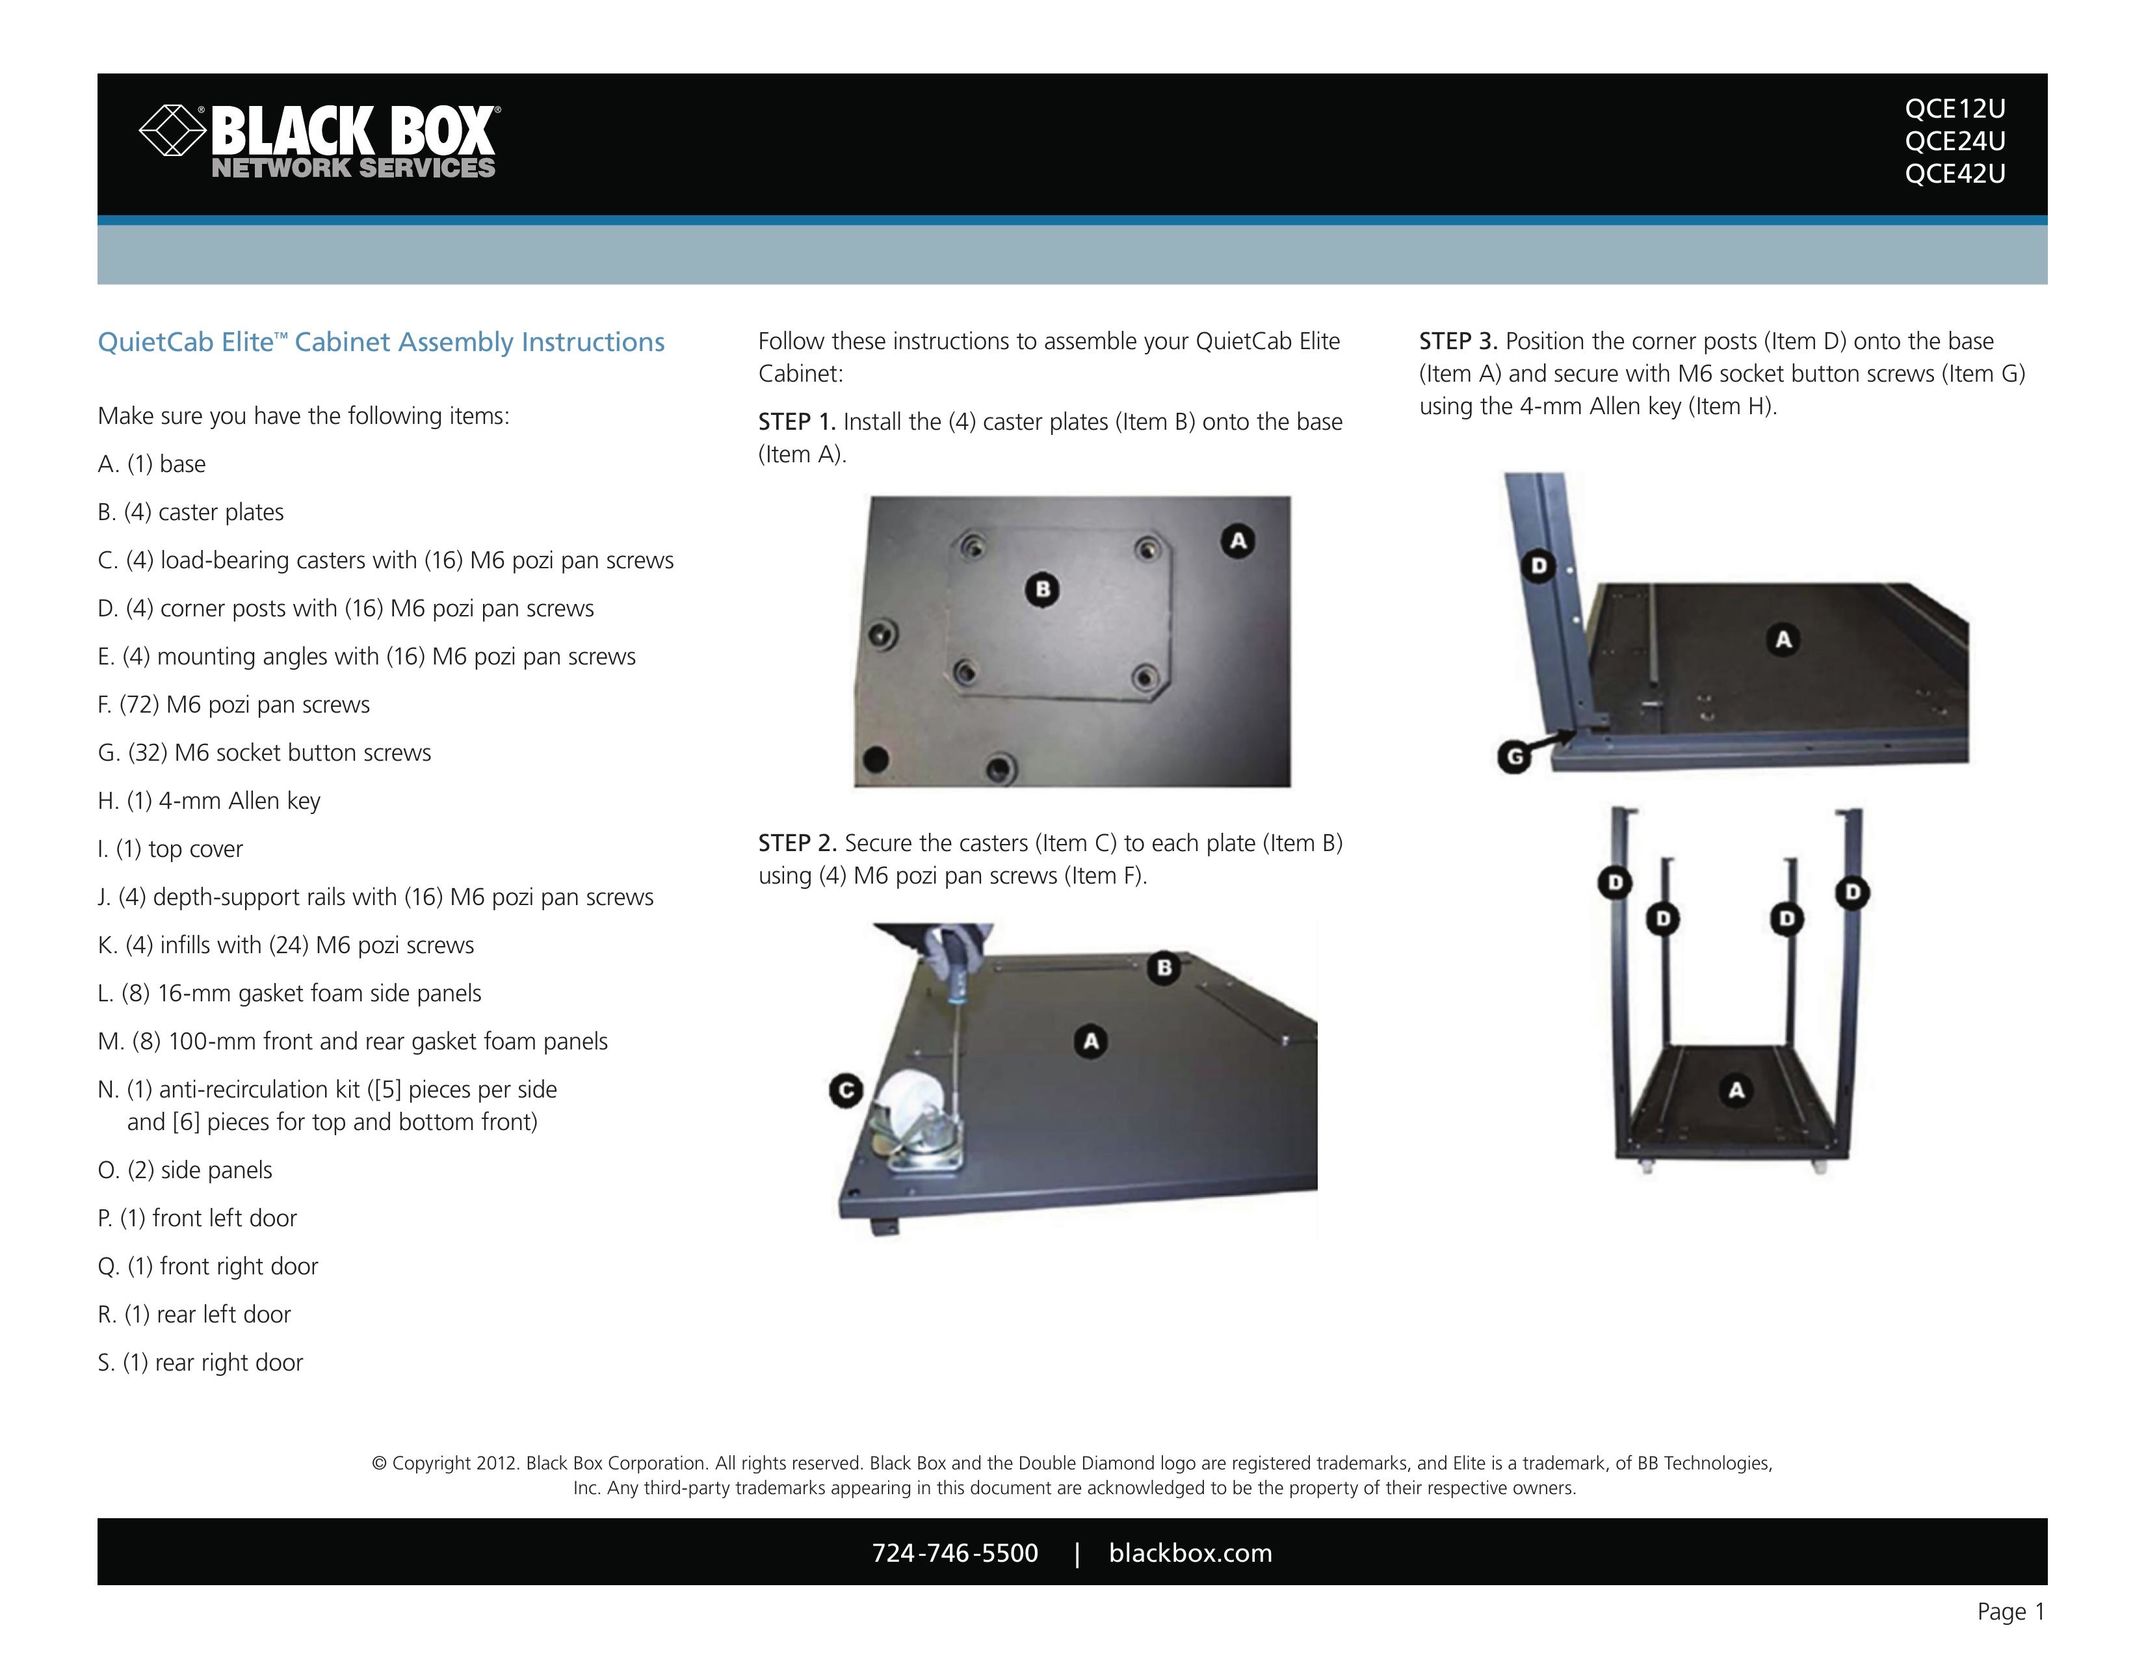 Black Box QuietCab Elite Cable Box User Manual